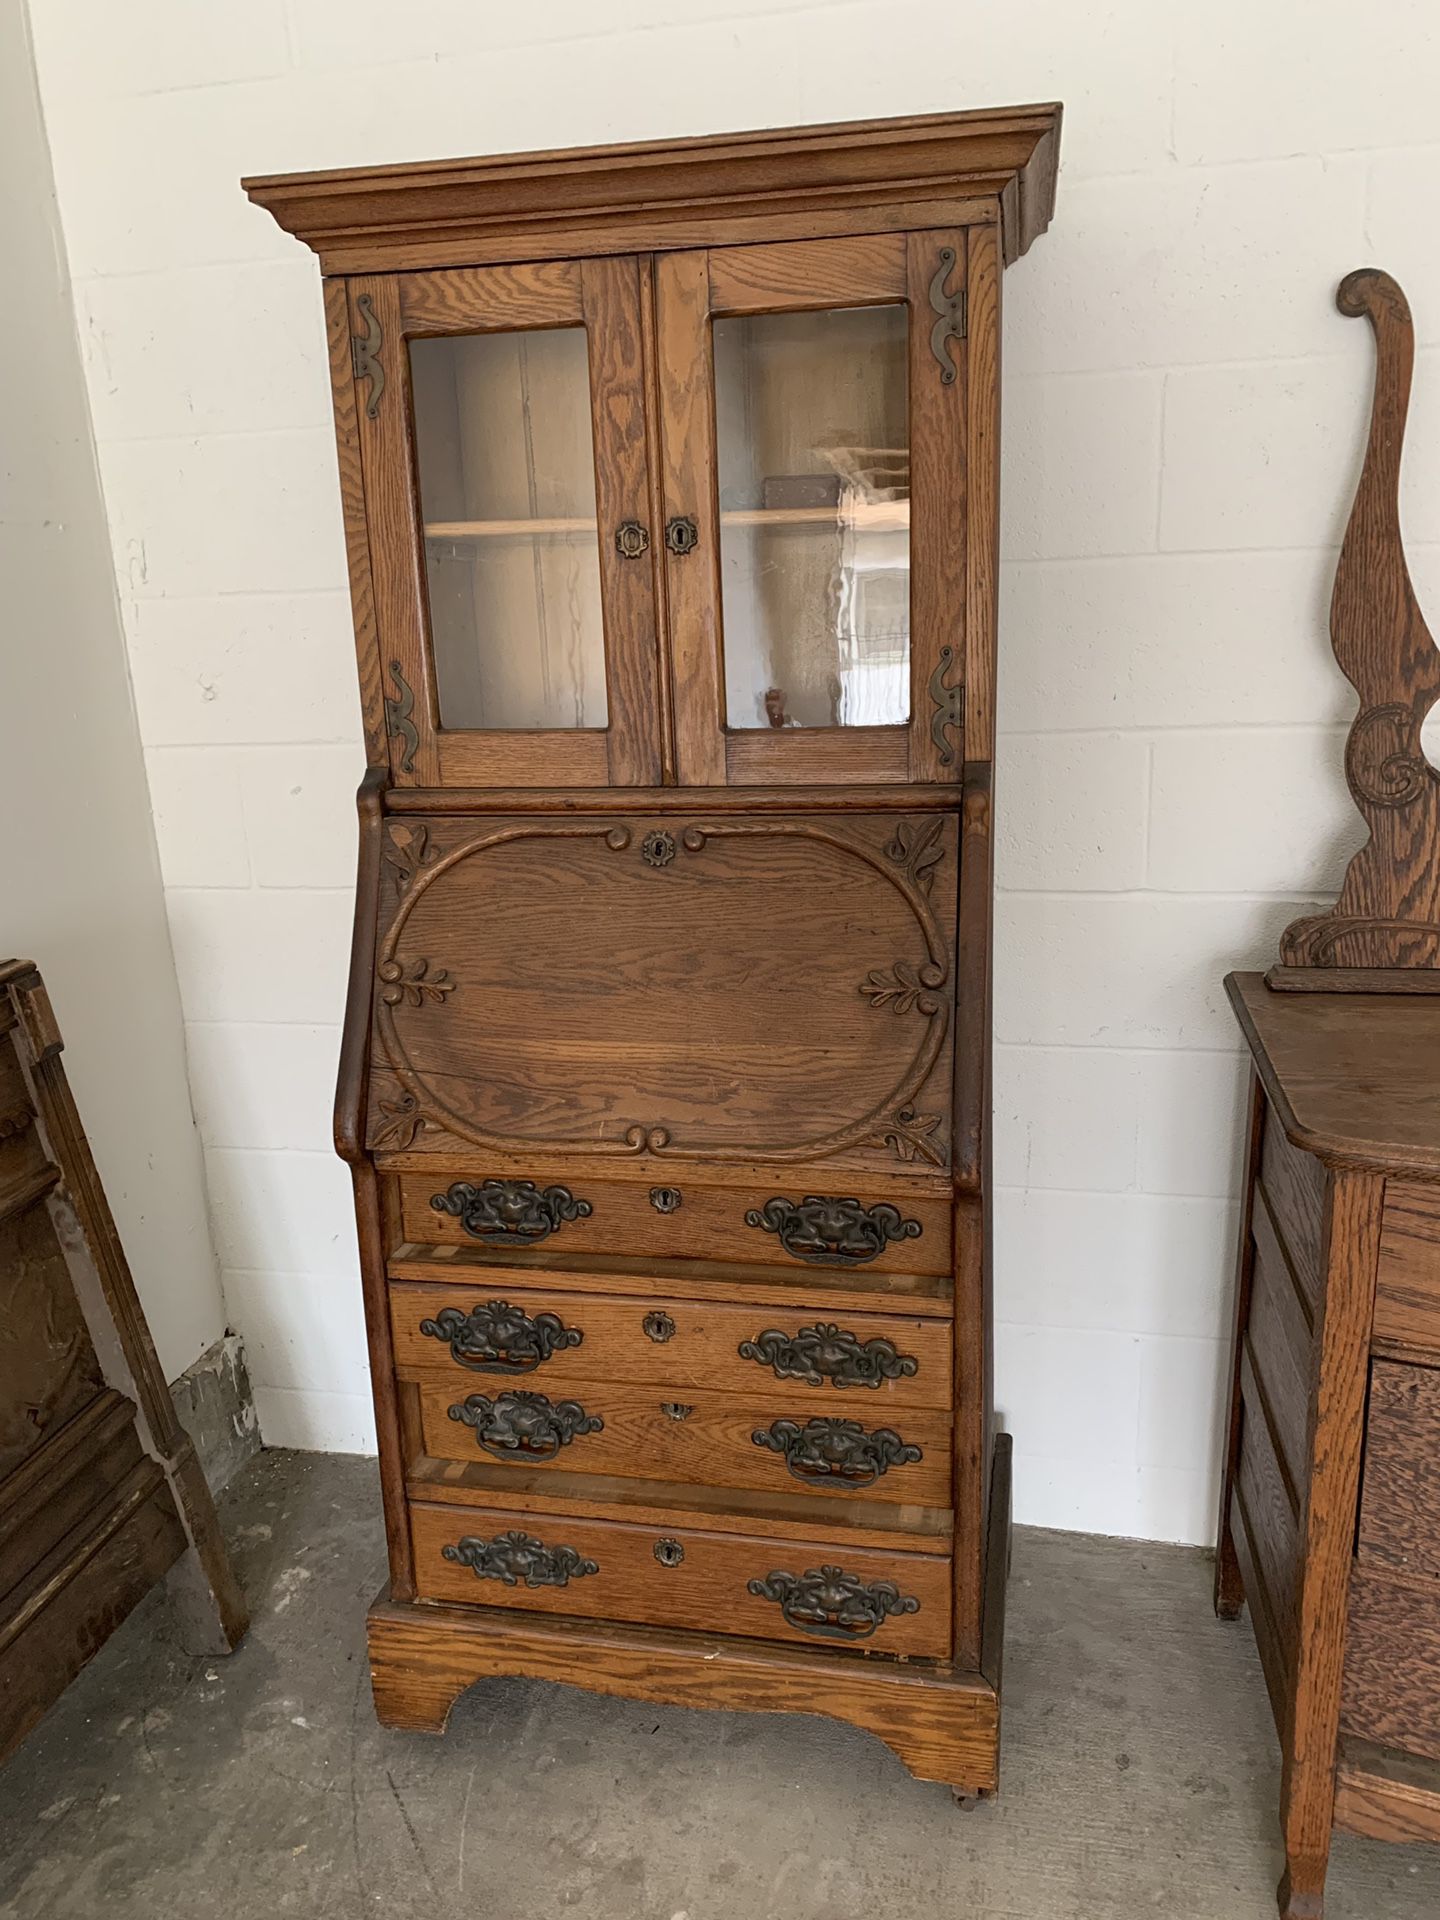 Antique oak furniture $80-150